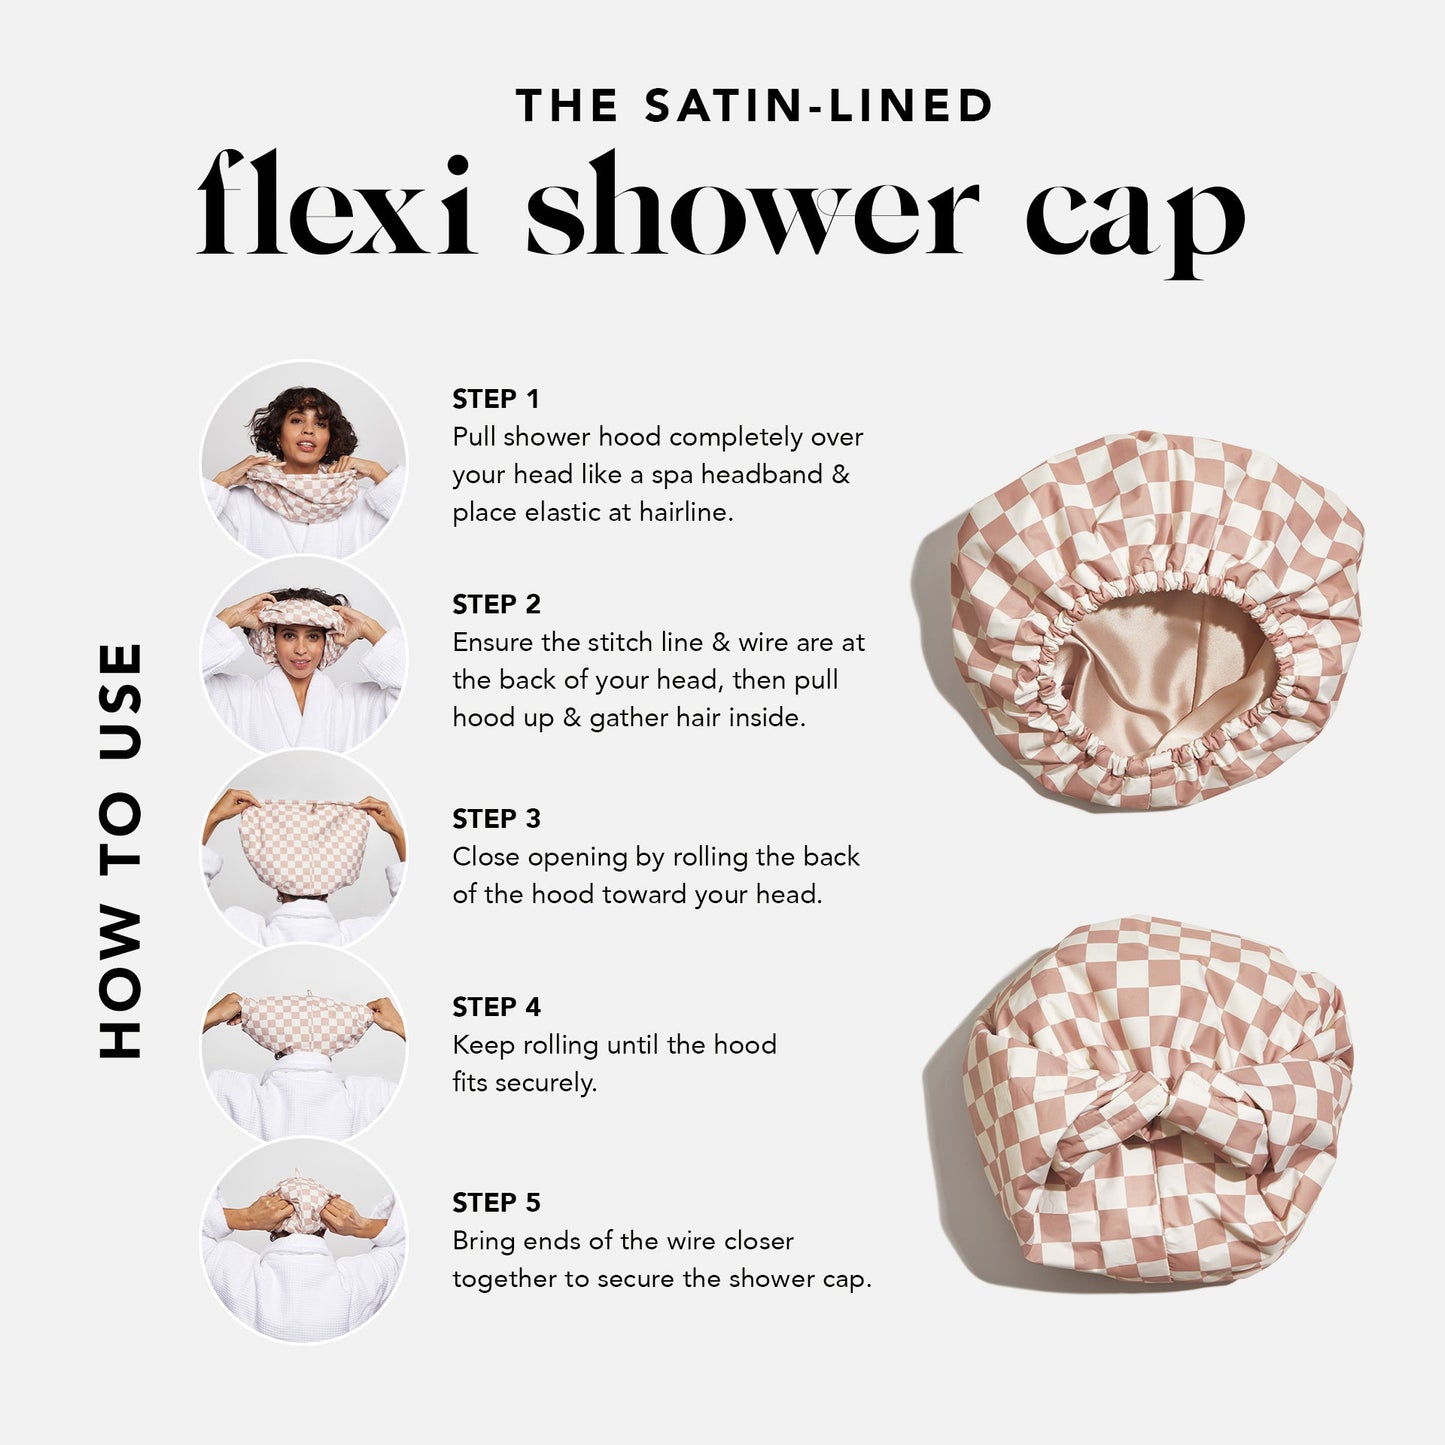 Kitsch Luxury Shower Cap